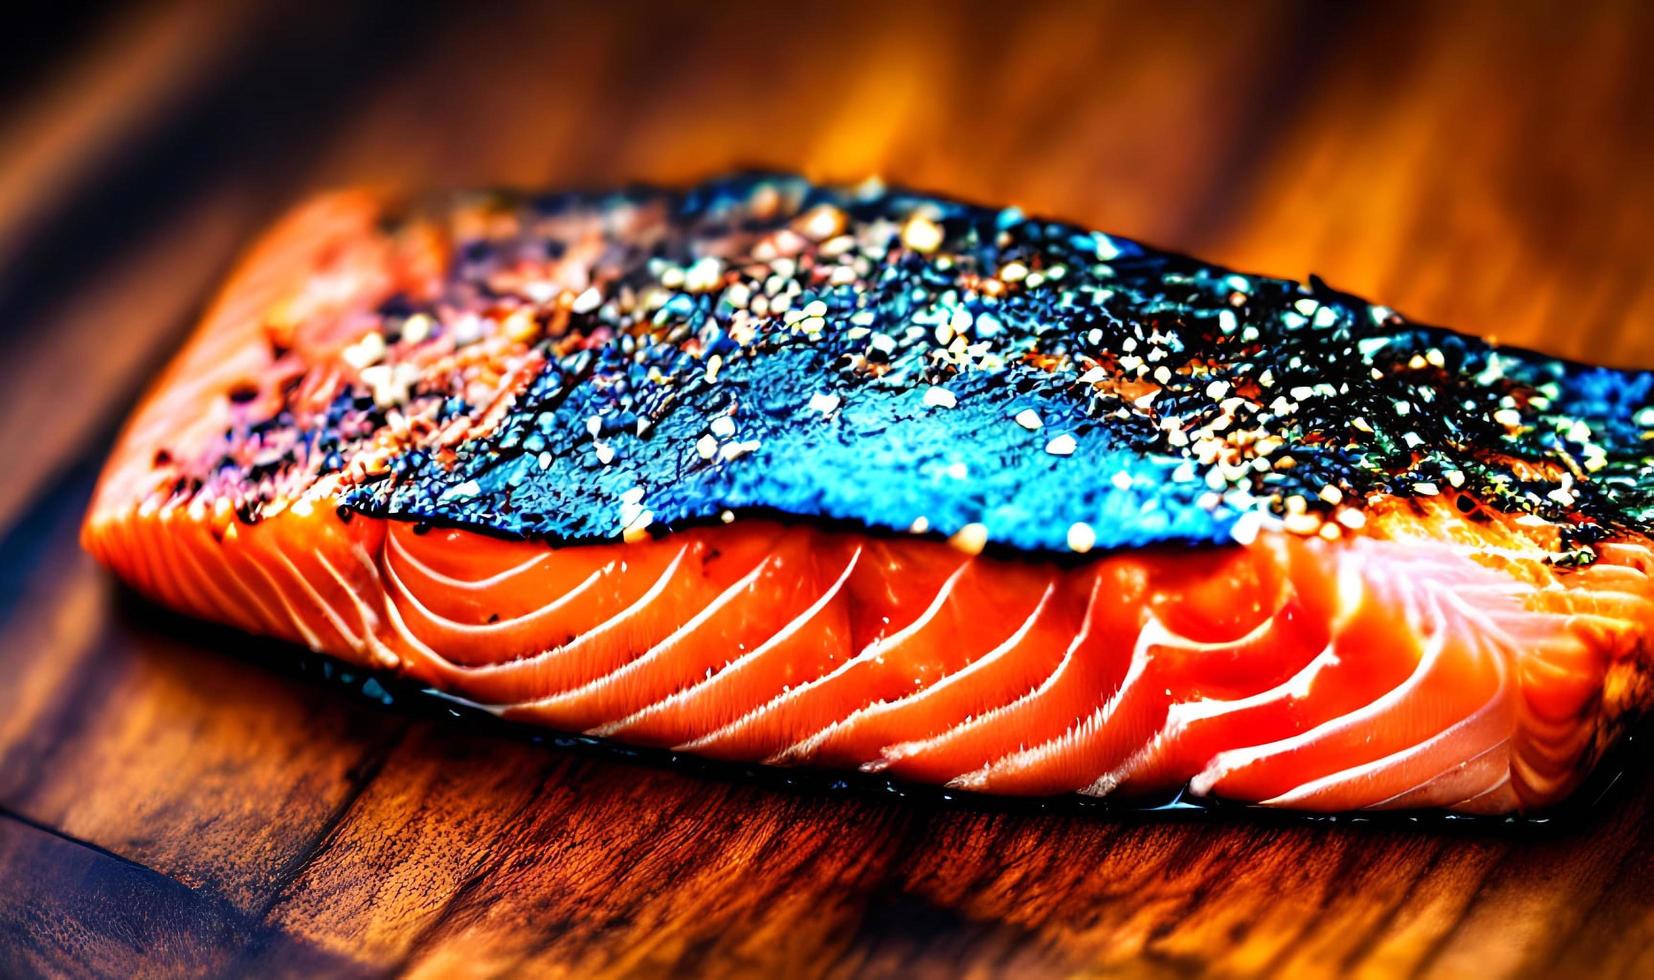 saumon grillé. aliments sains saumon cuit au four. plat de poisson chaud. photo